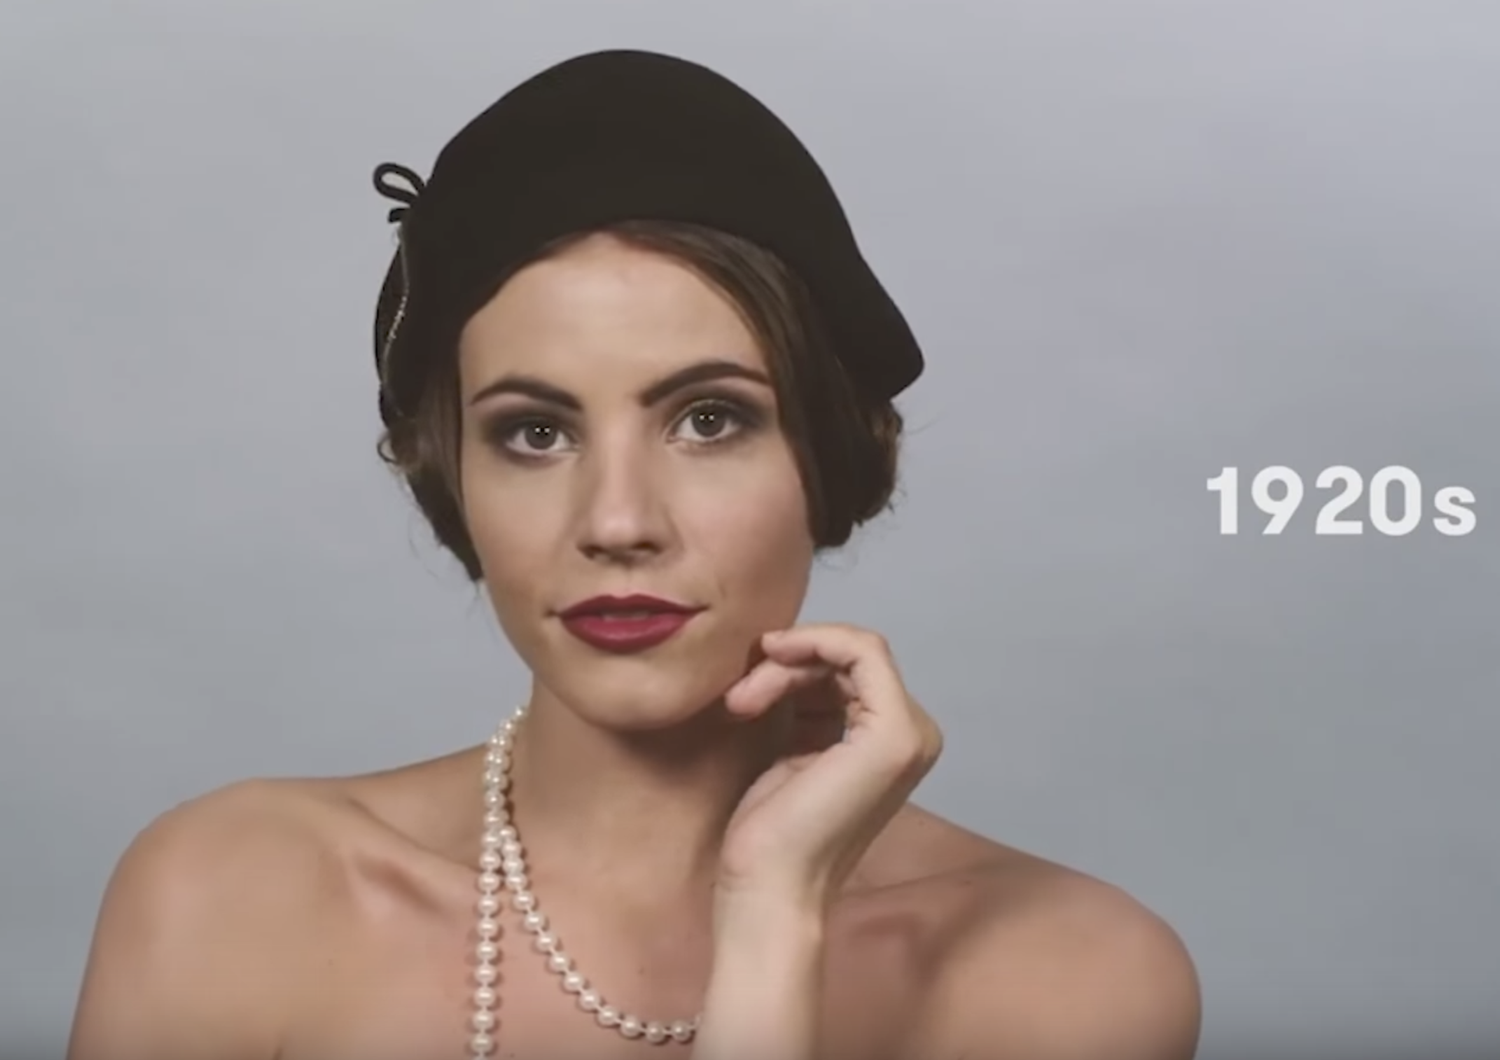 100 anni di stile in due minuti: il Time celebra la&nbsp;femminilit&agrave;&nbsp;italiana